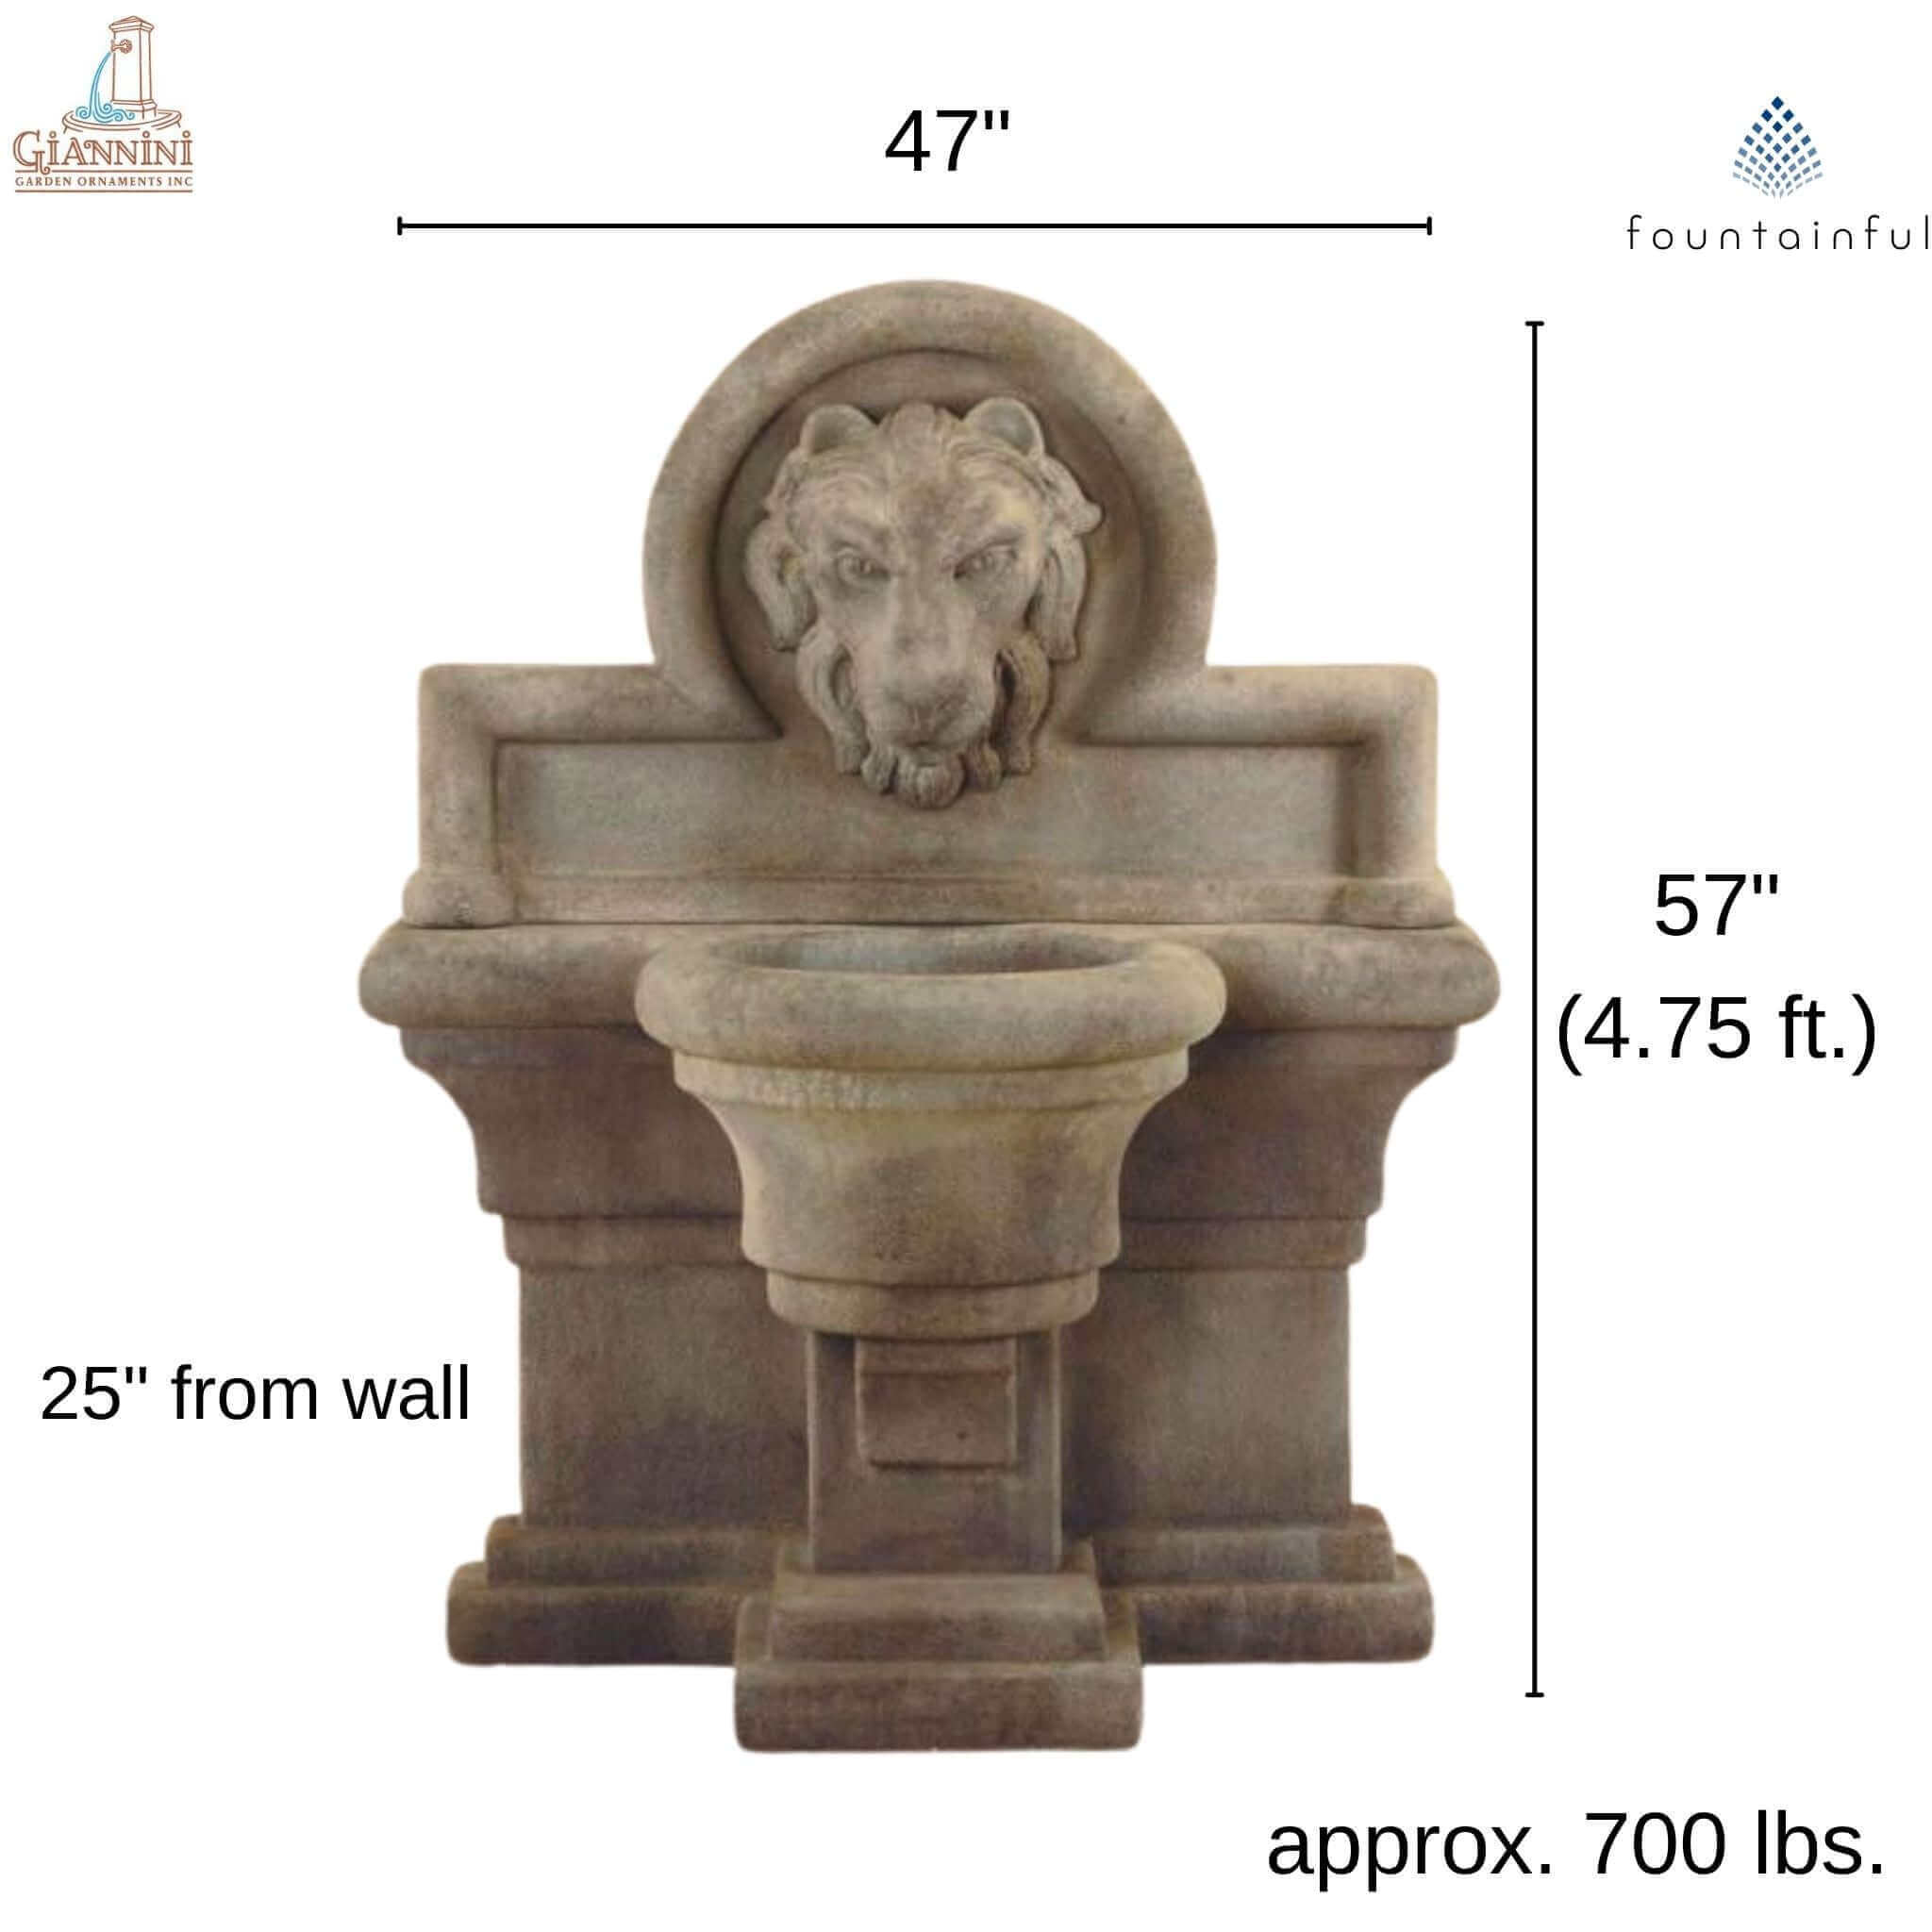 Leone Grande Concrete Wall Fountain - Giannini #1226